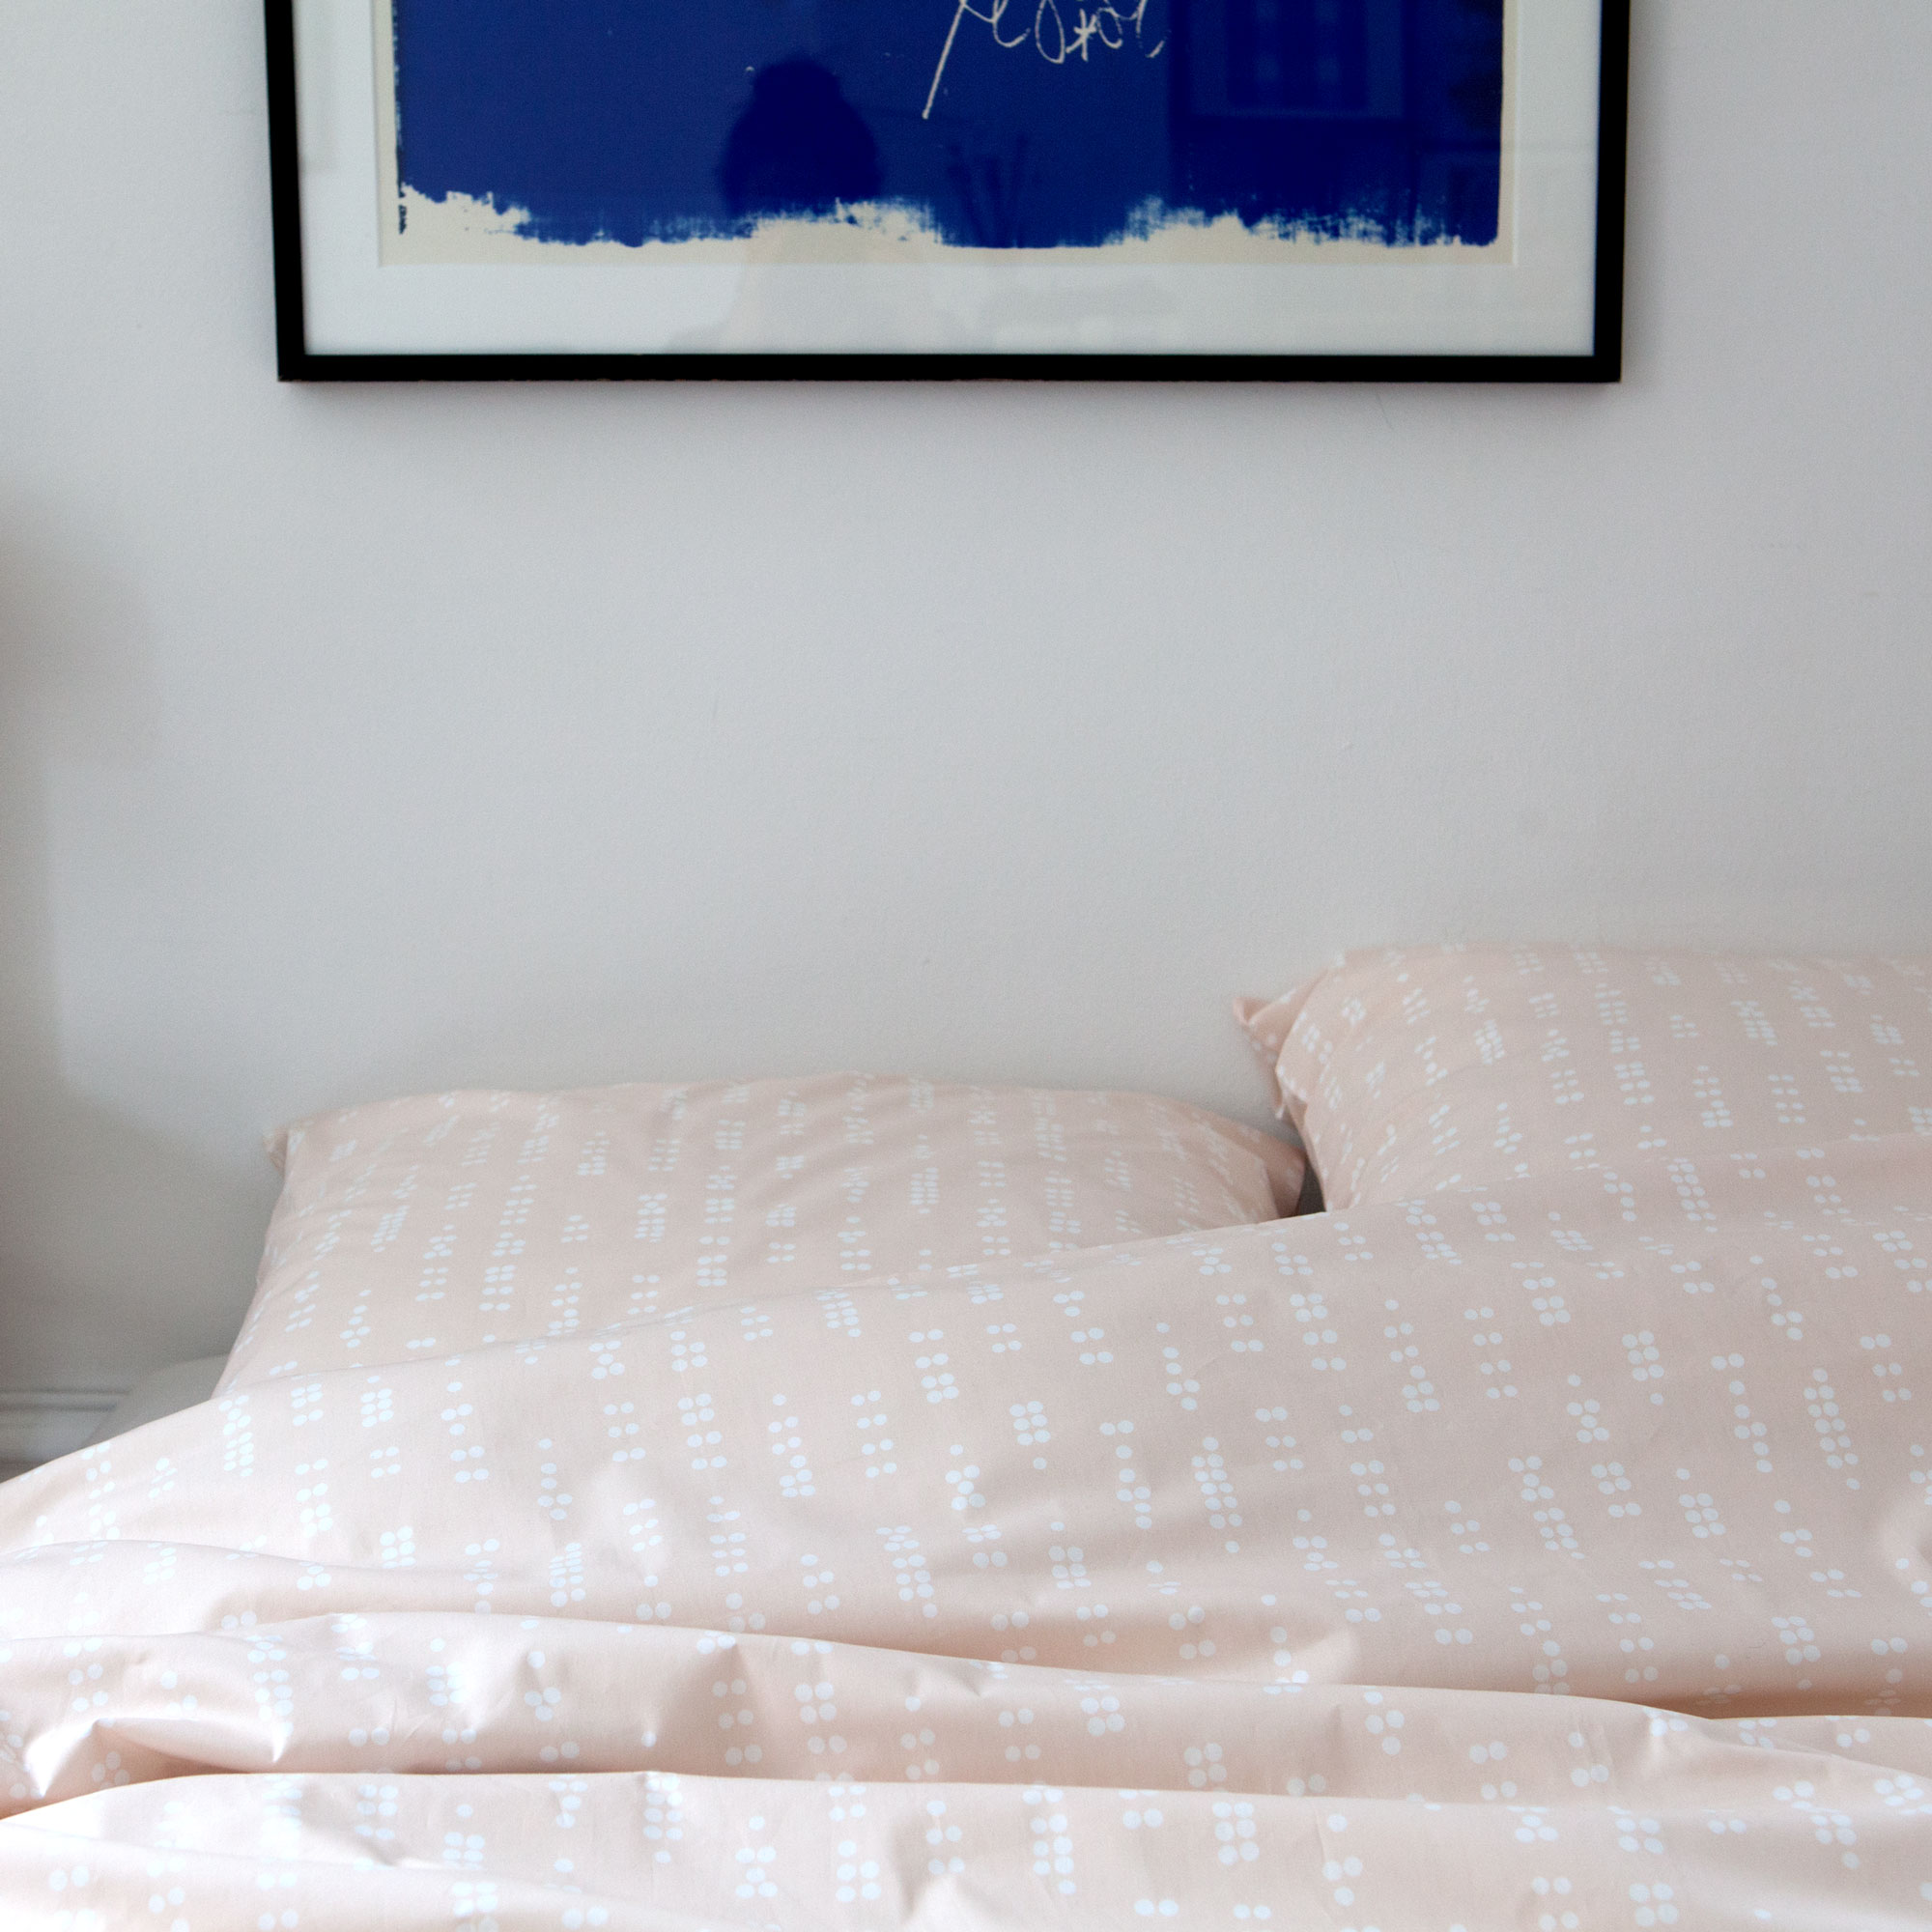 Bed linen, Dot sea shell, design Anne Rosenberg, RosenbergCph